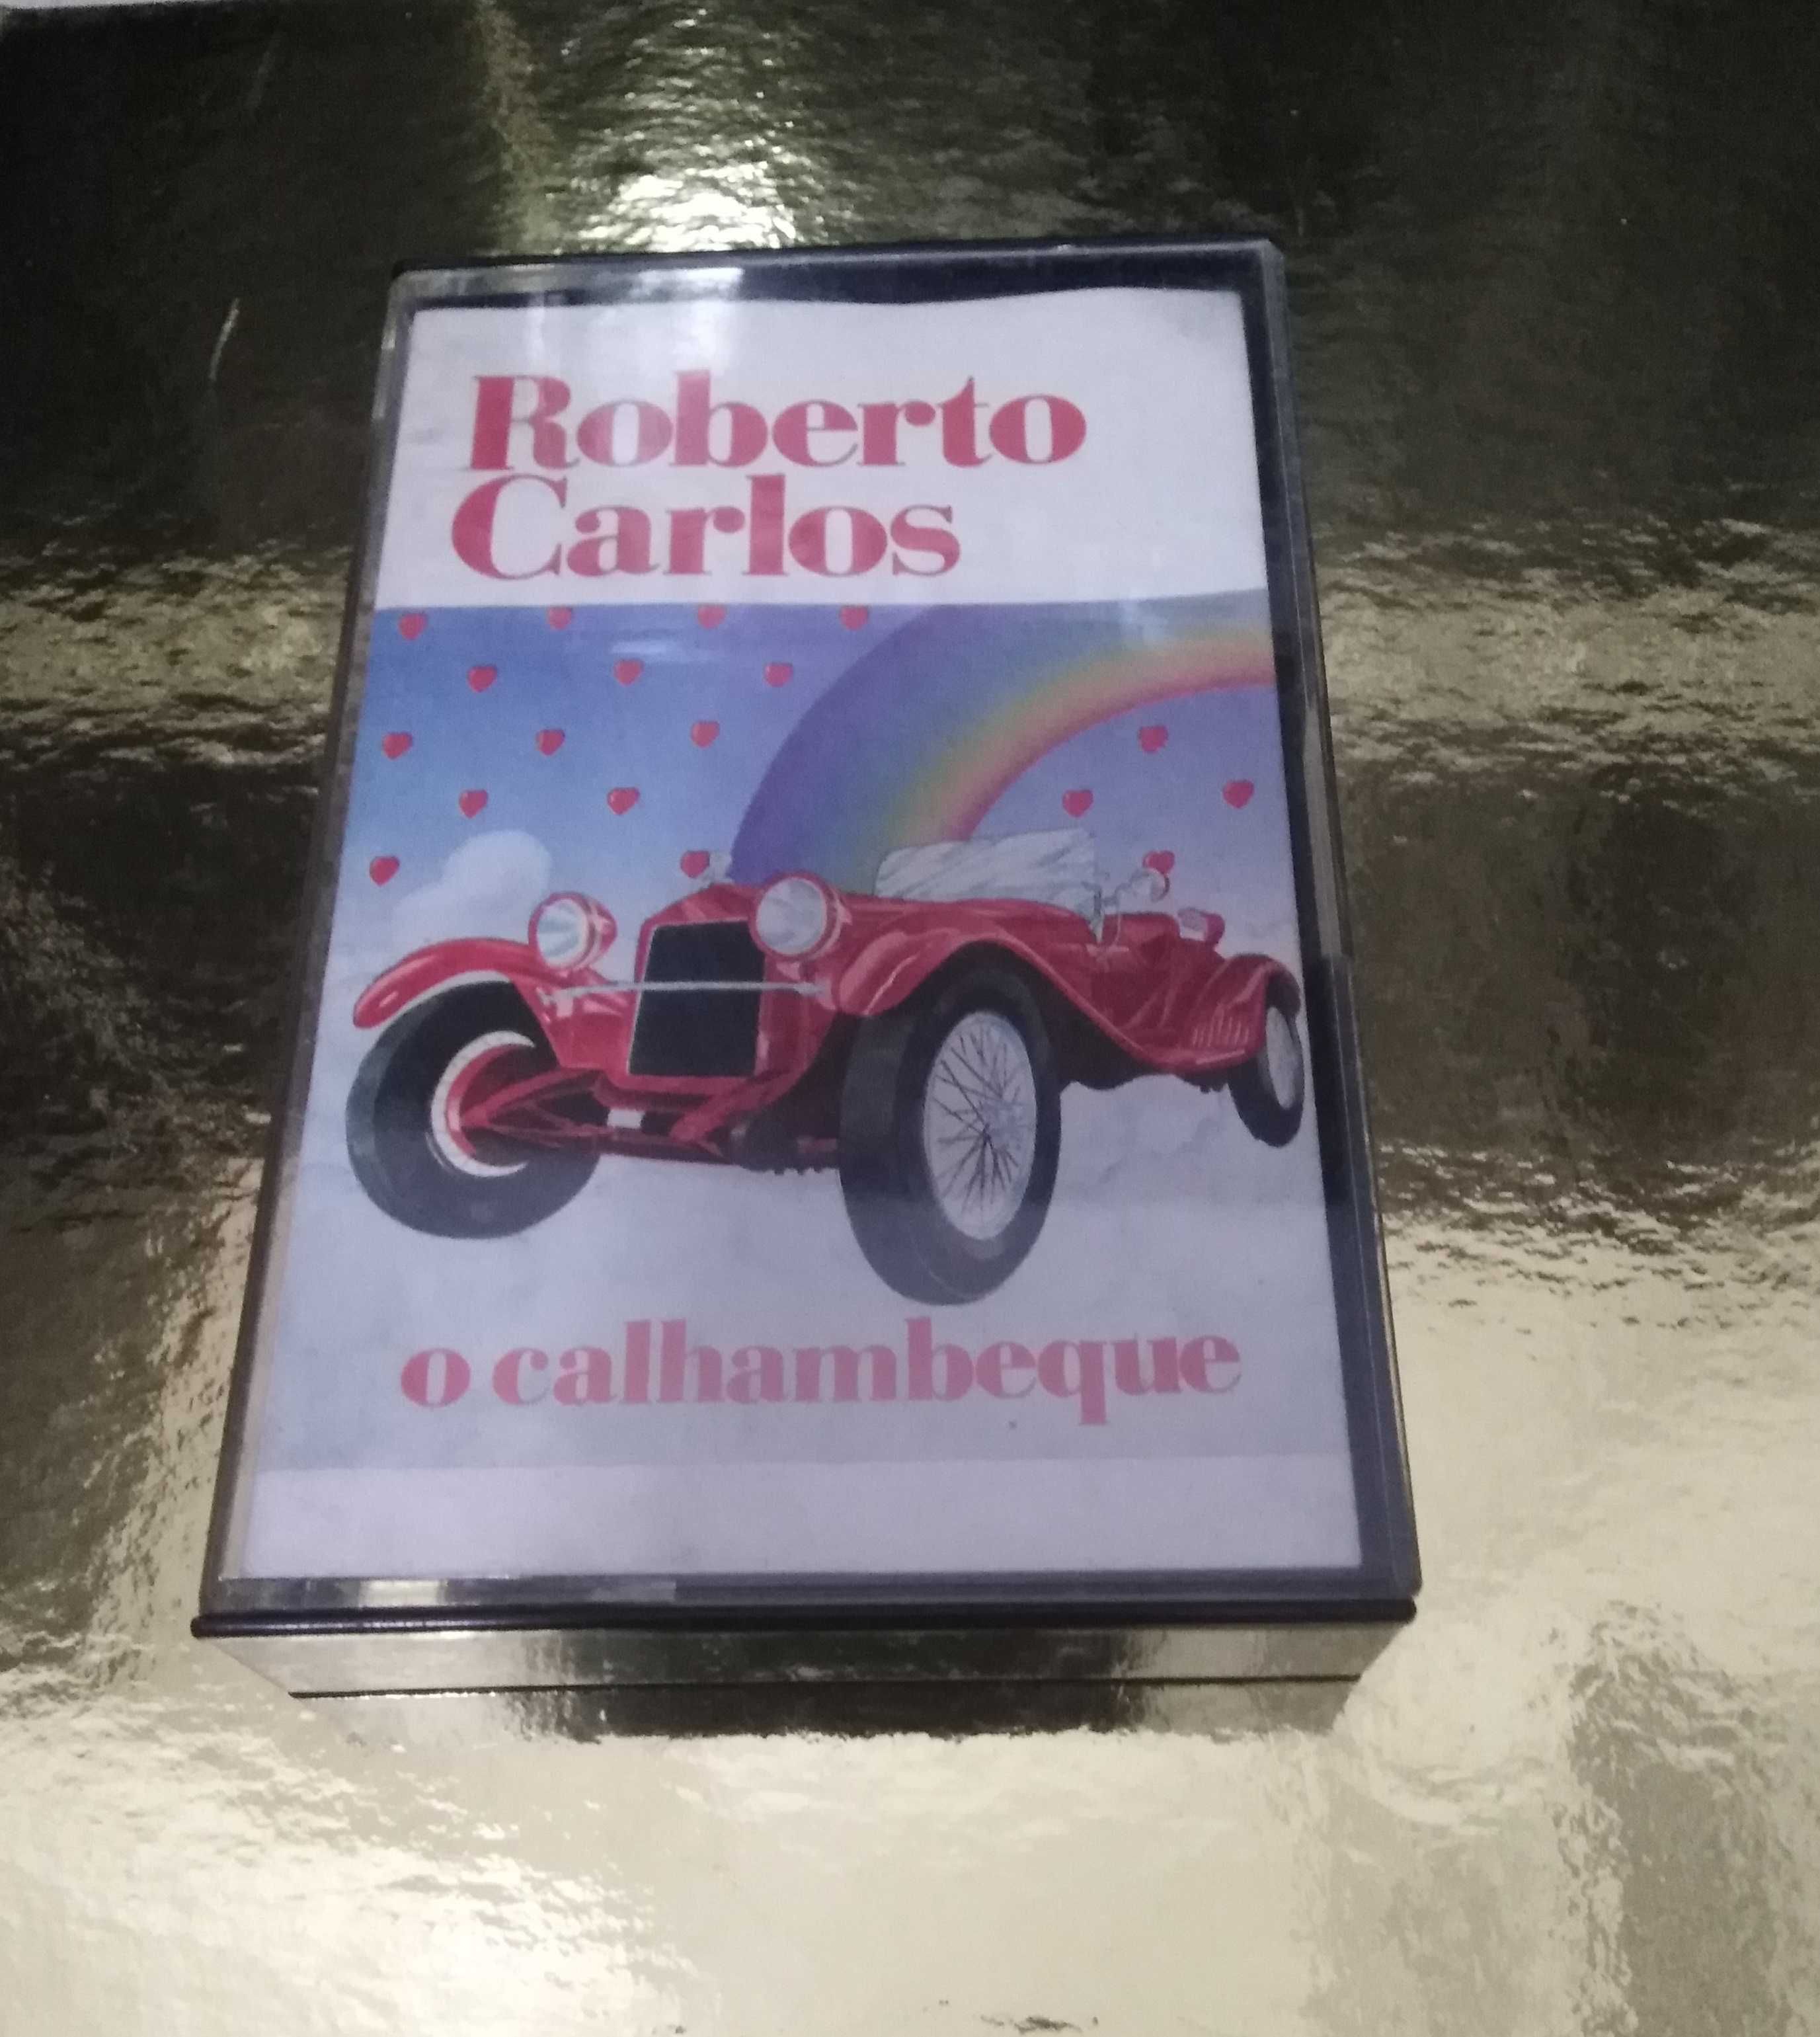 Conjunto de 2 cassetes/k7s Roberto Carlos.